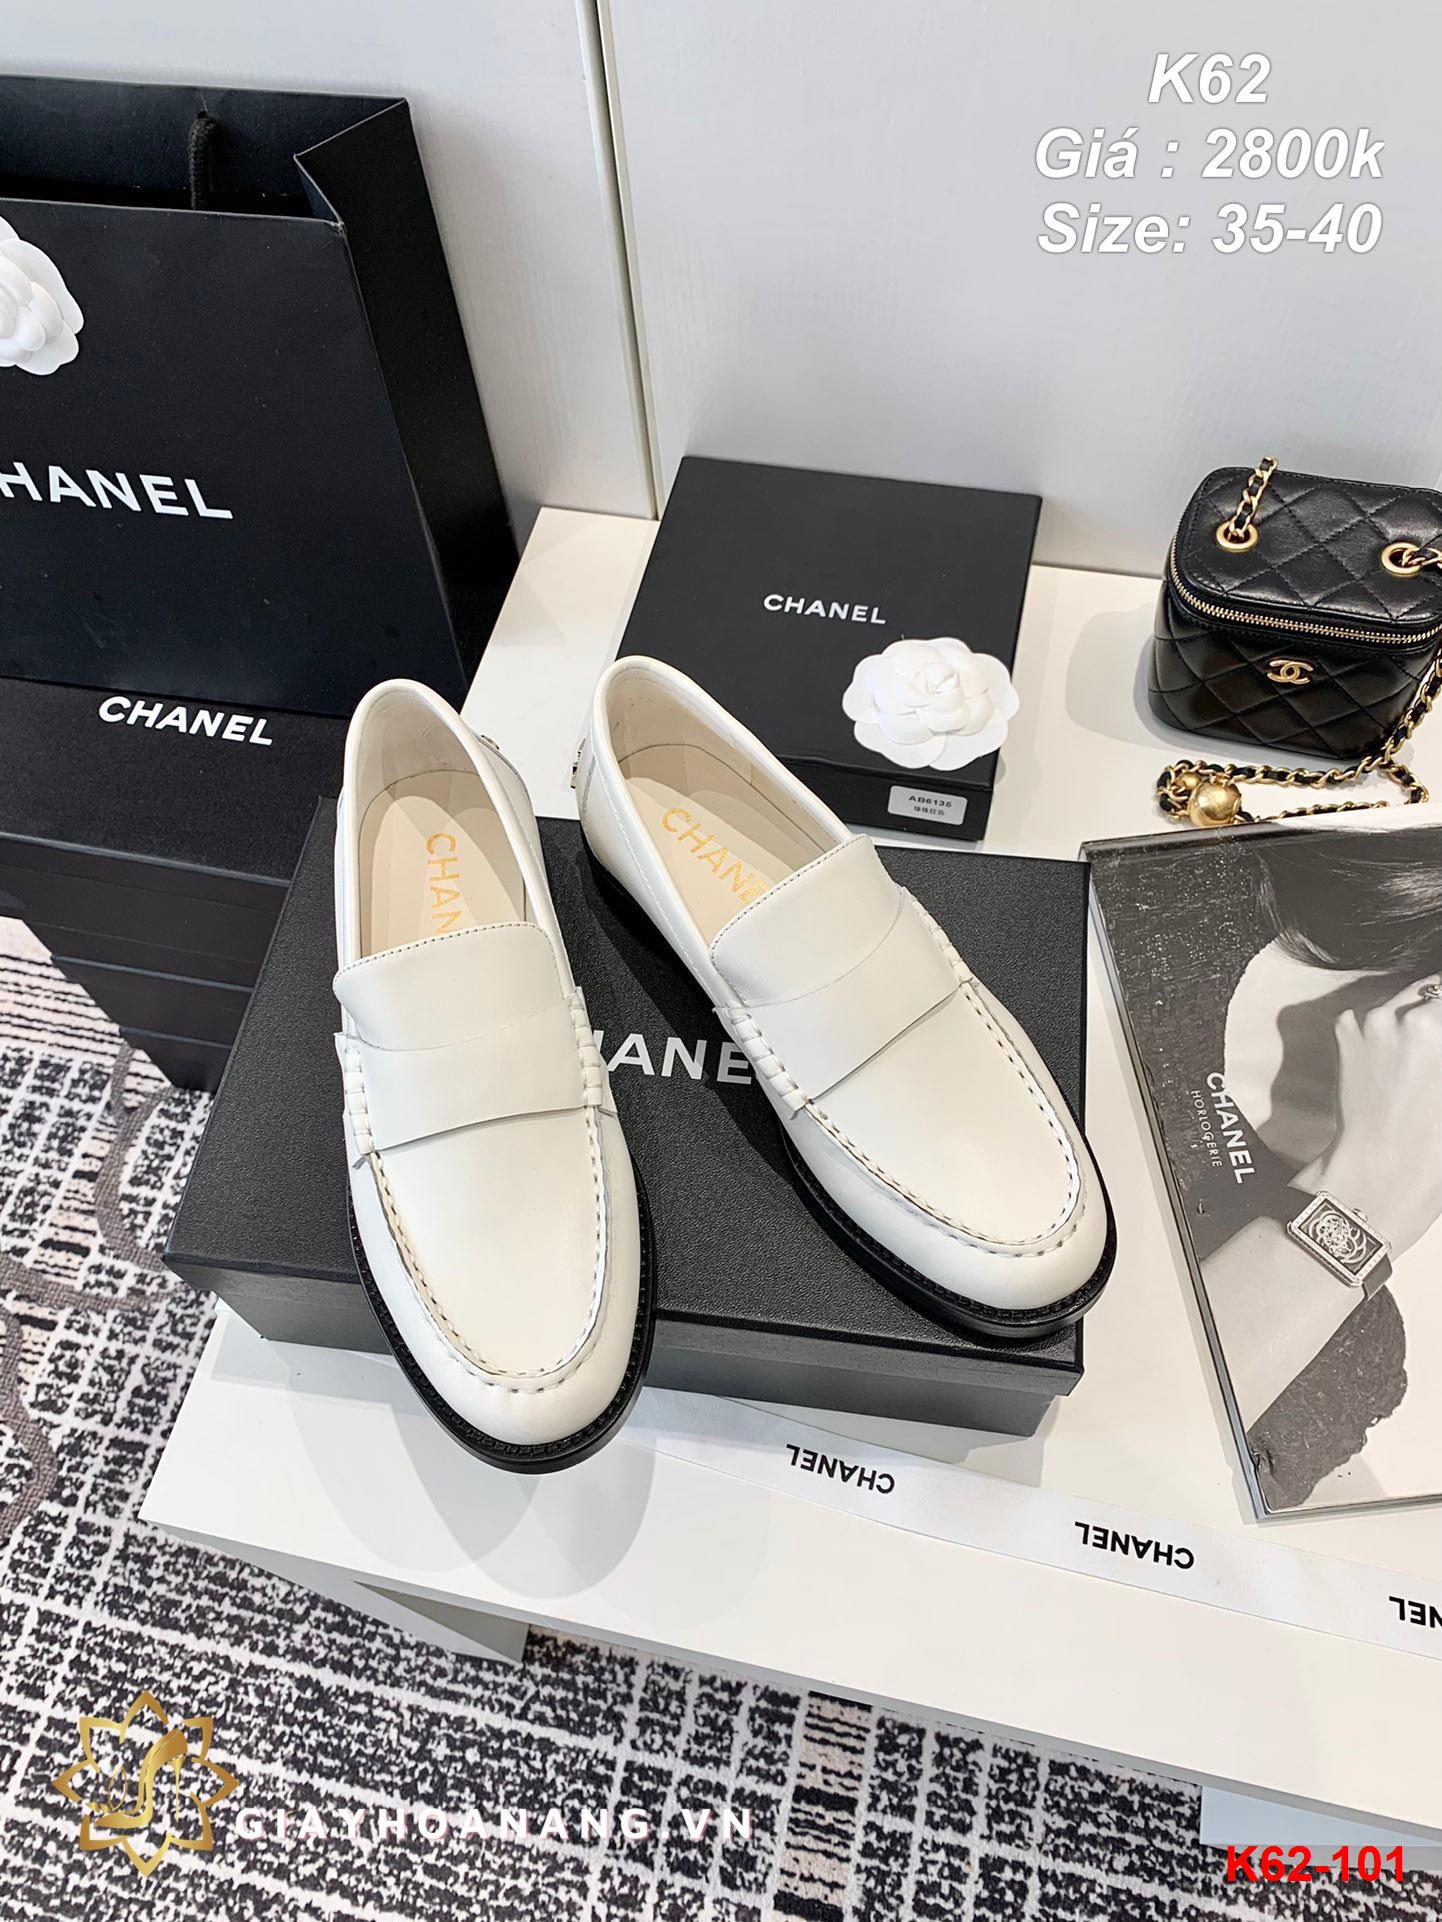 K62-101 Chanel giày lười siêu cấp